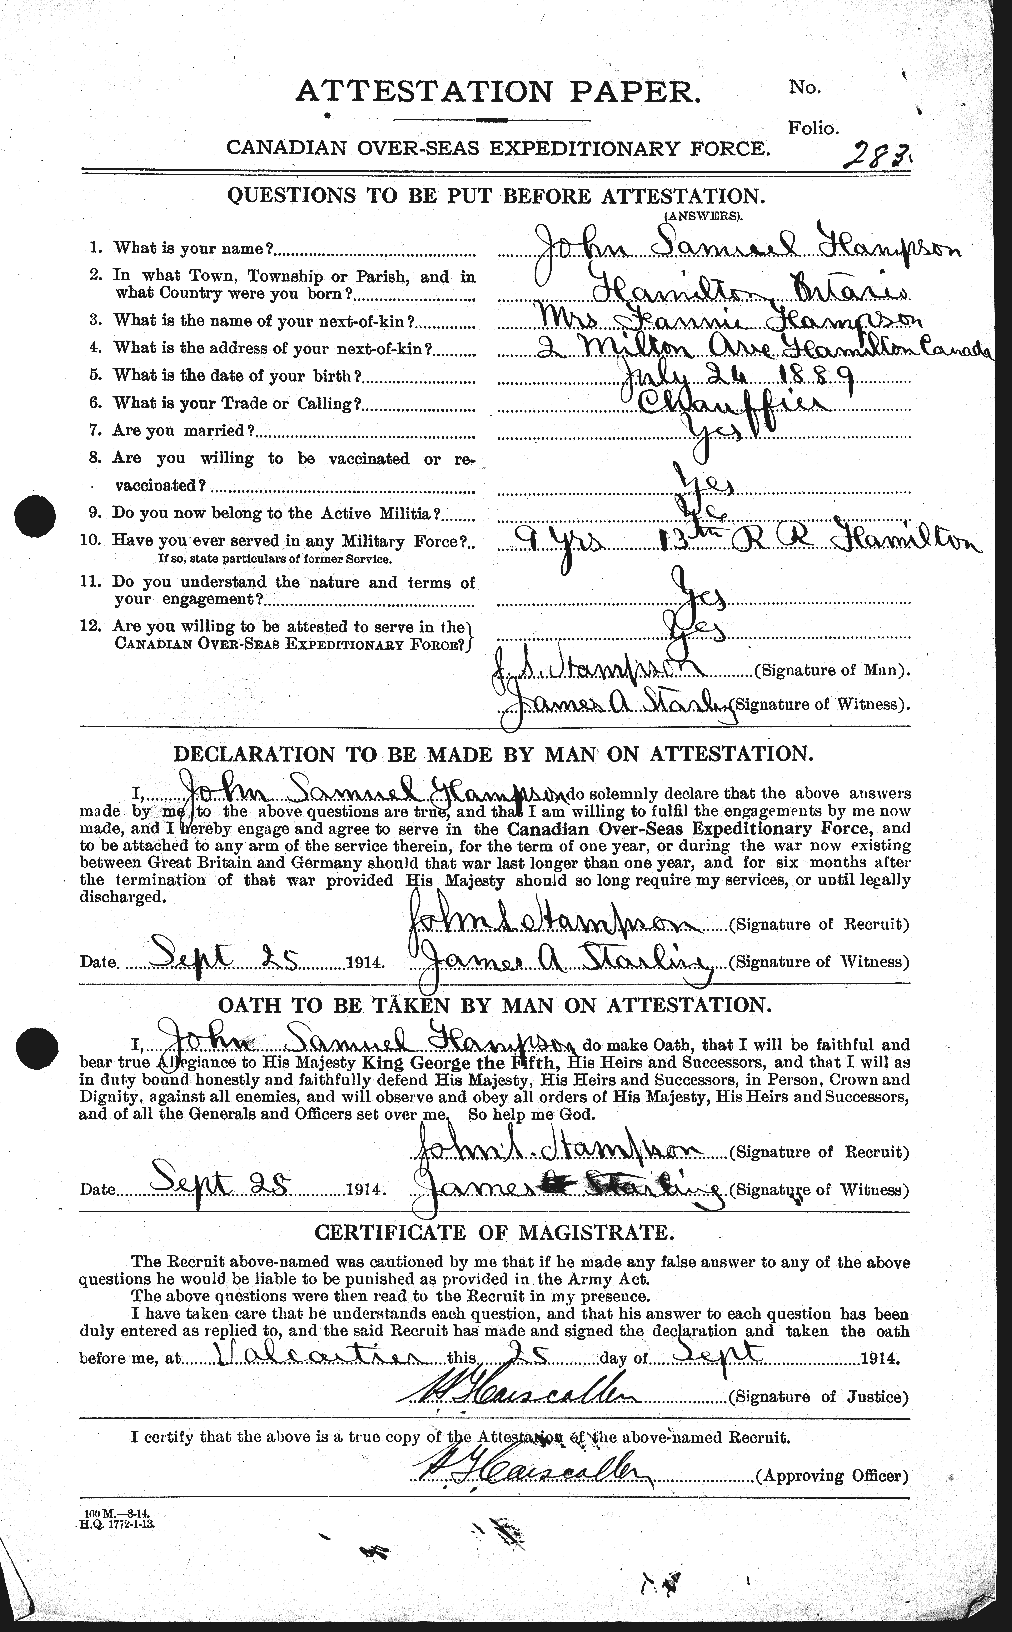 Dossiers du Personnel de la Première Guerre mondiale - CEC 373555a